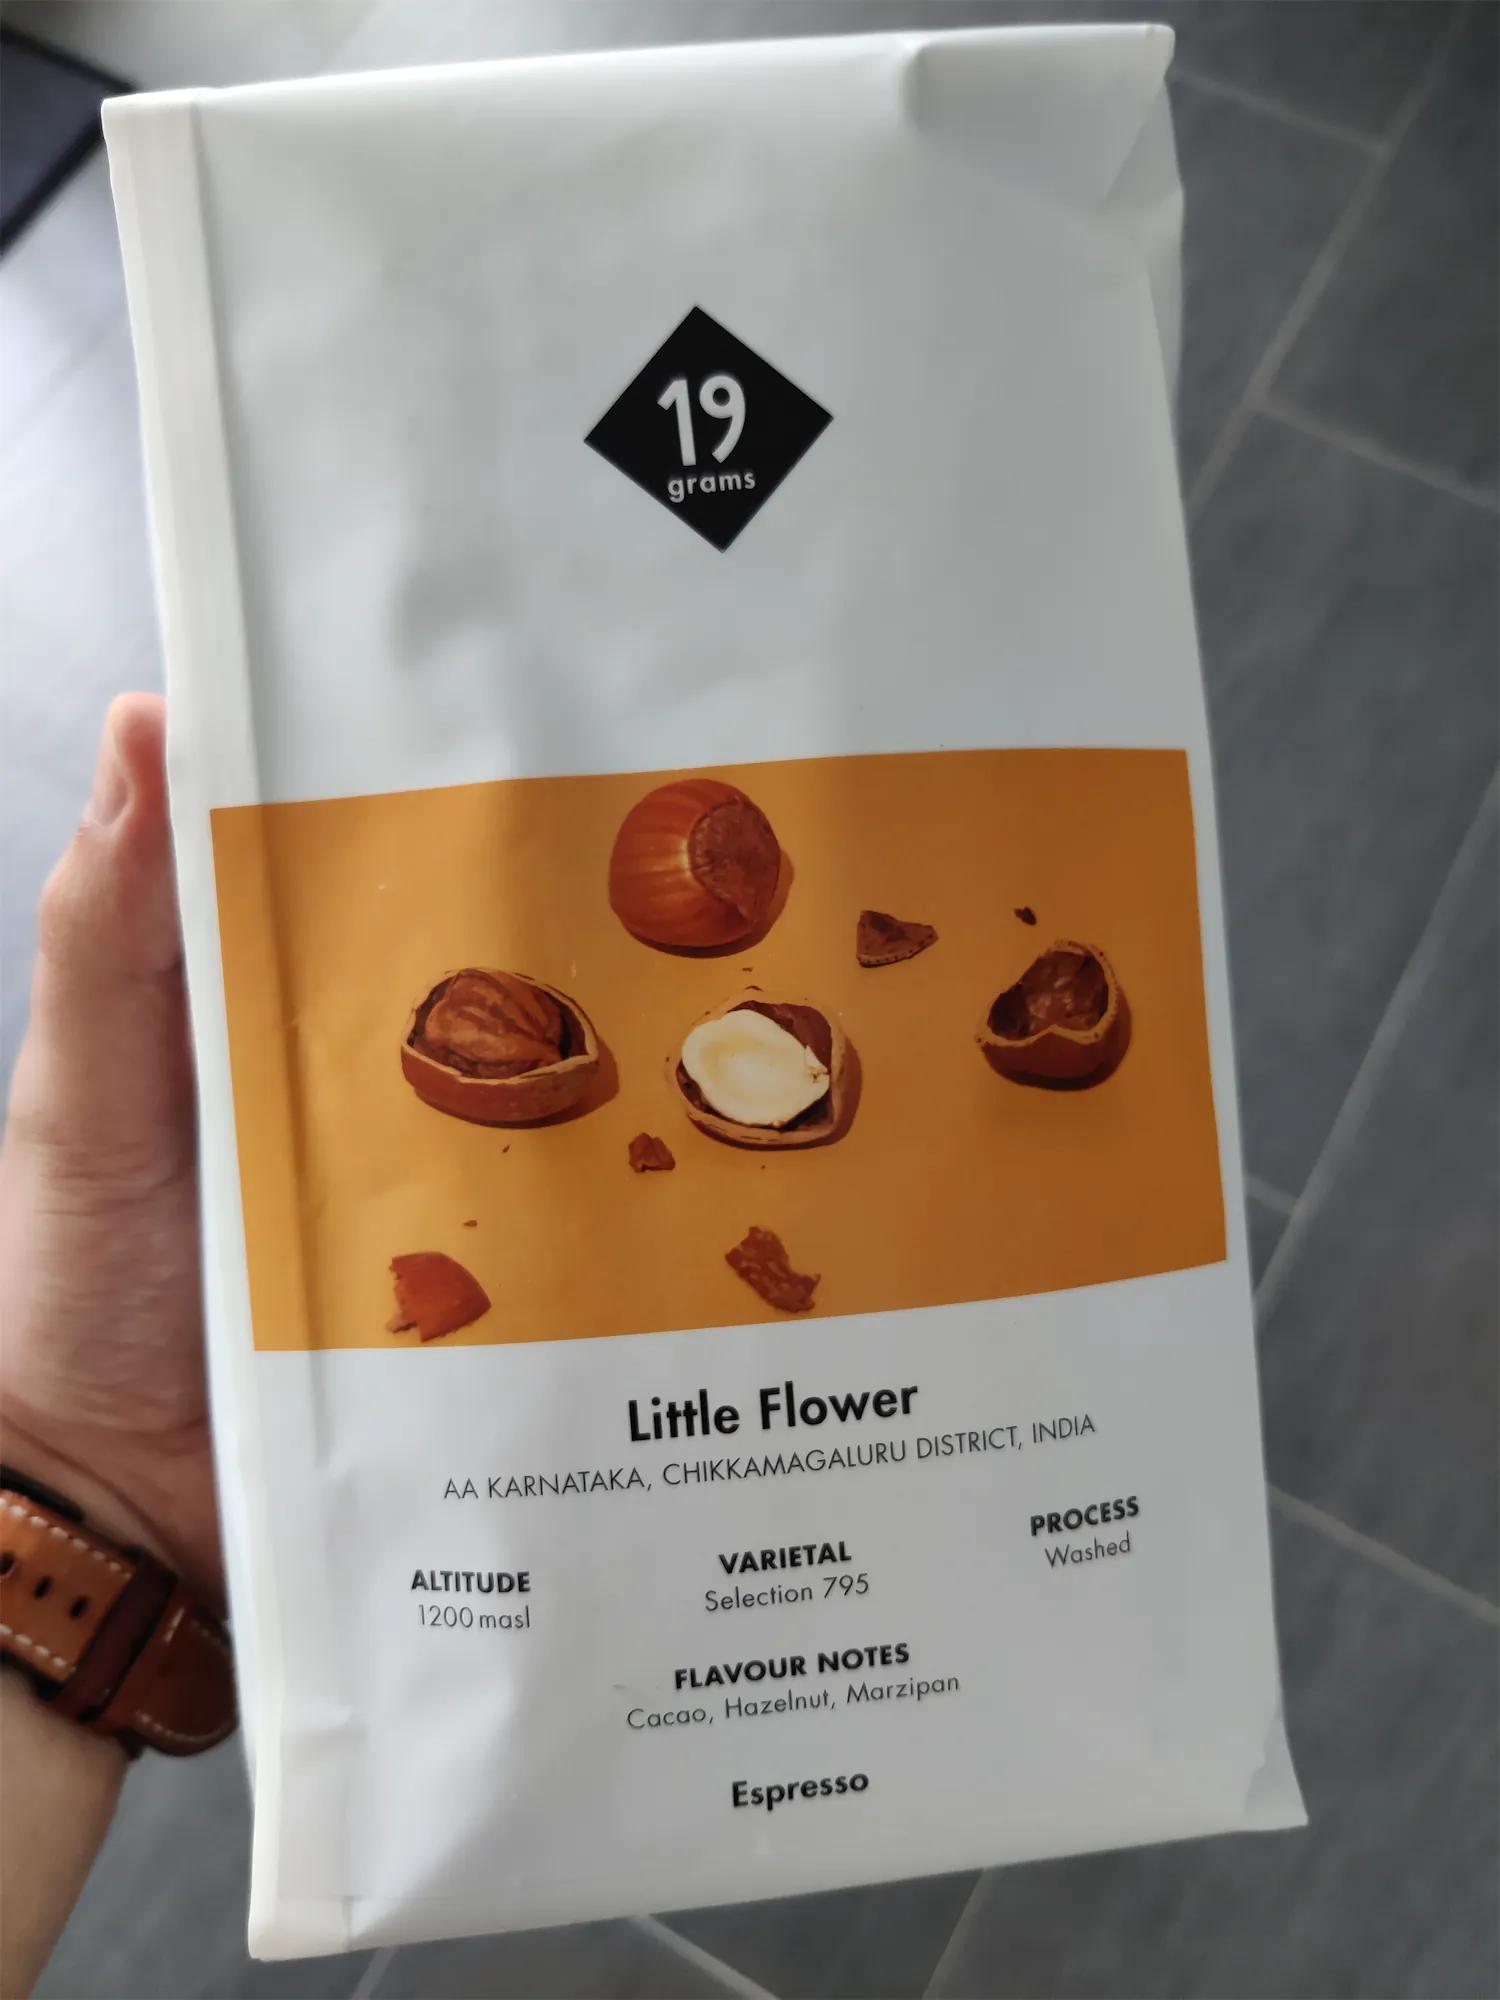 Kaffeeverpackung mit Kaffee "Little Flower" von 19grams